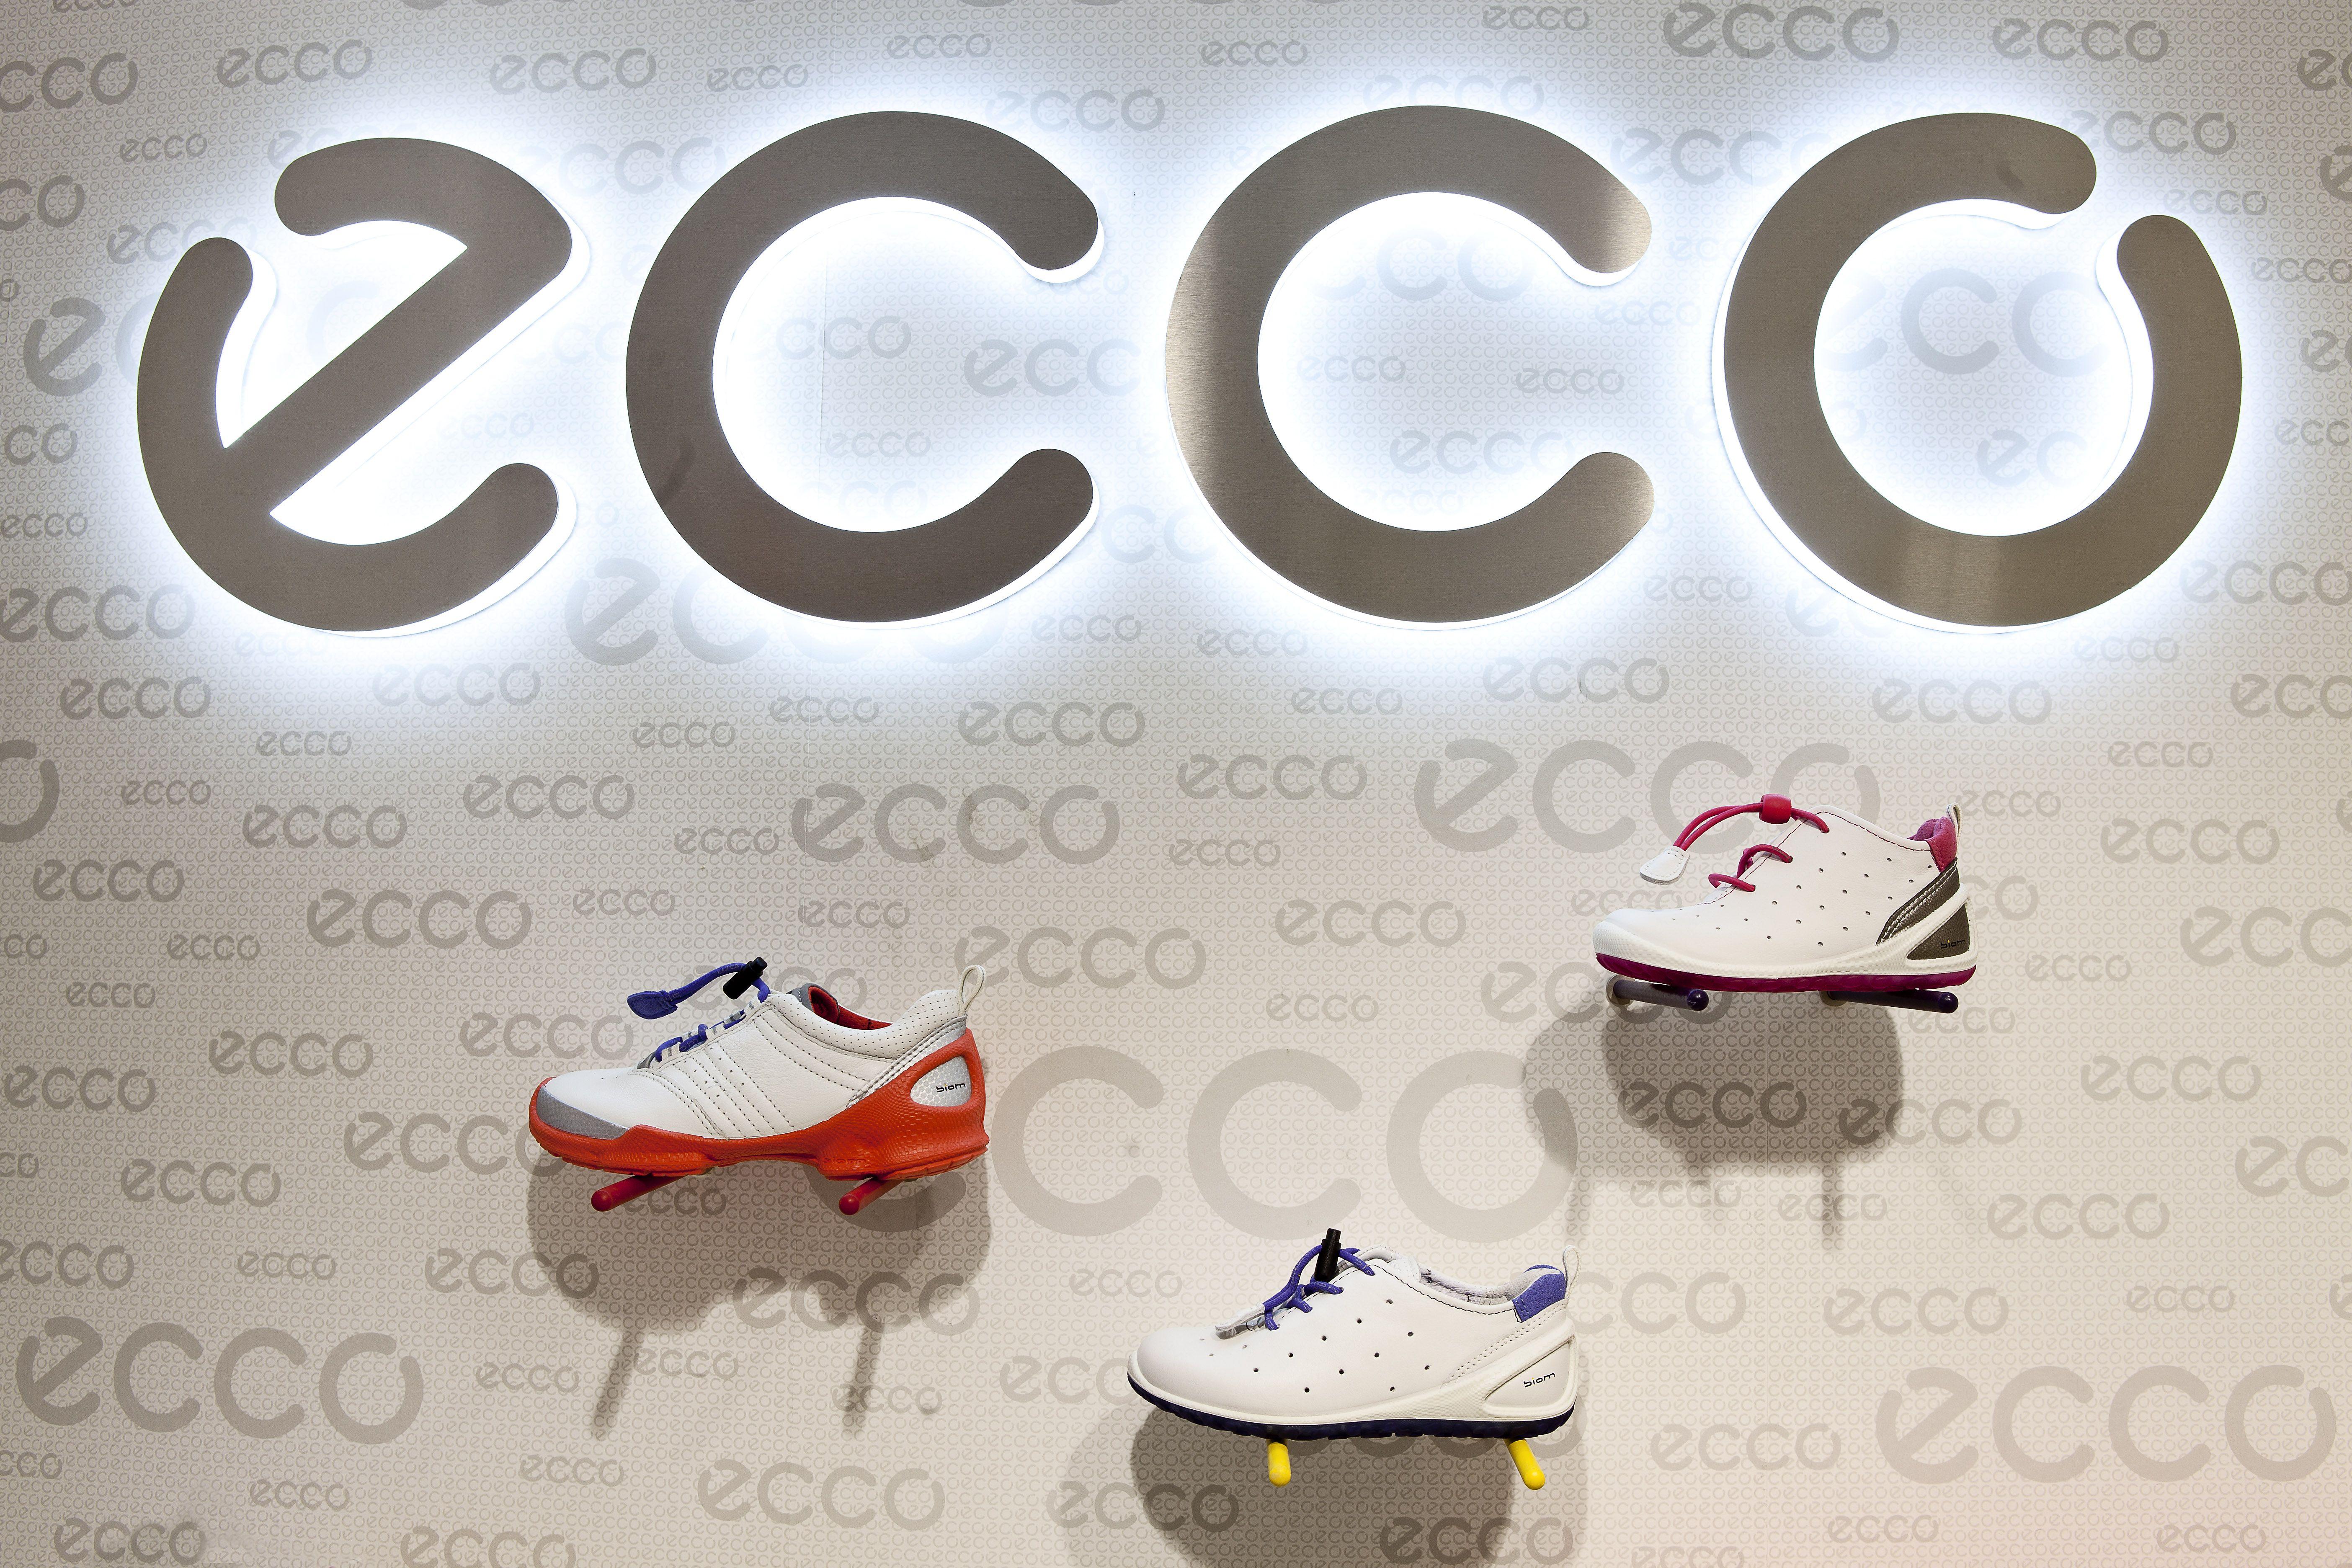 Ecco Logo - Images - ECCO Group